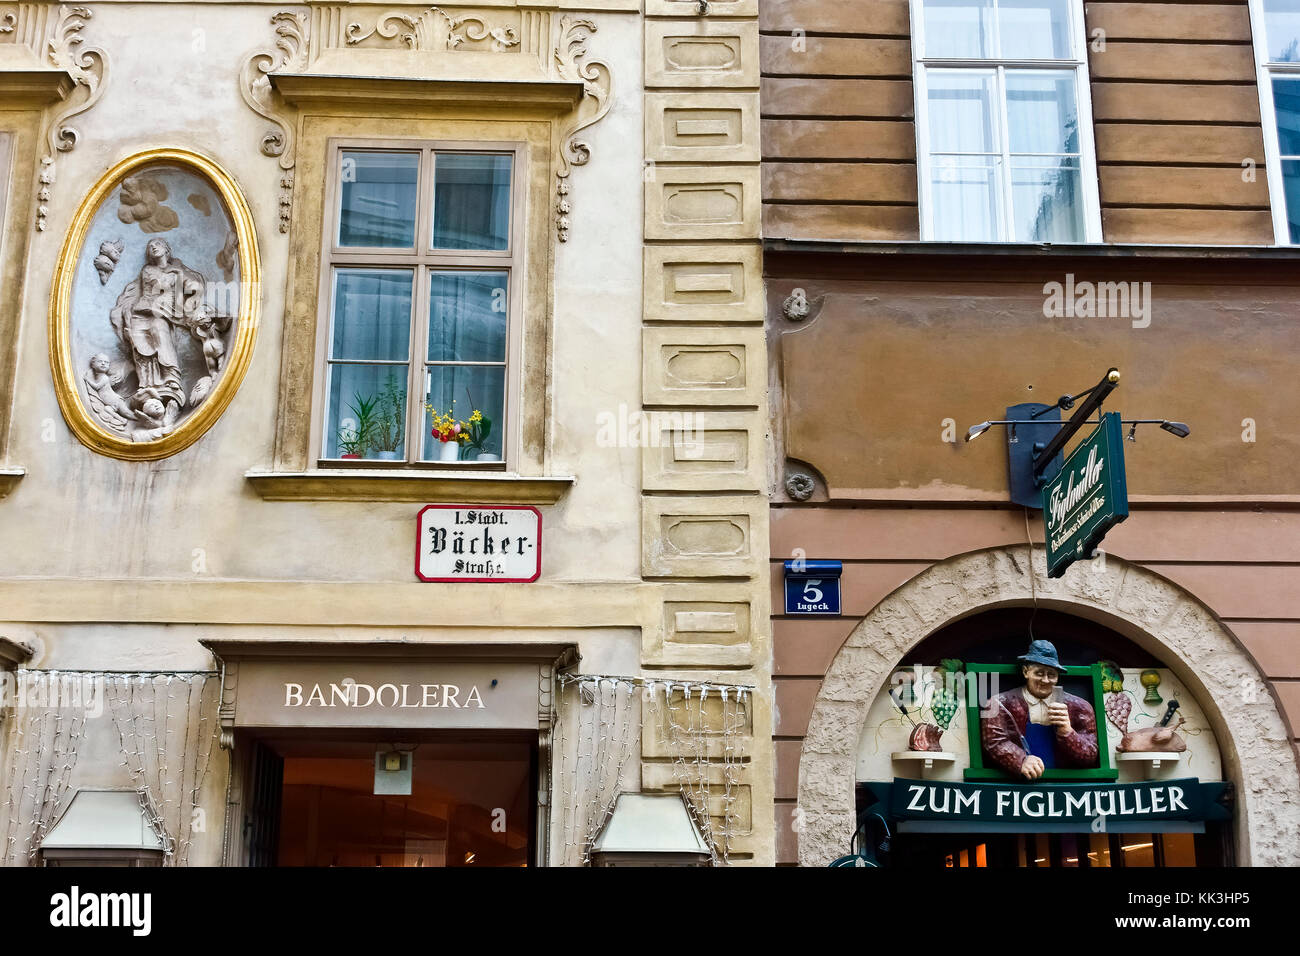 Figlmuller traditionelles Wiener Restaurant. Der berühmteste schnitzel Restaurant in Wien, Österreich. Wand Keramik Werbung Schild über dem Eingang. Stockfoto